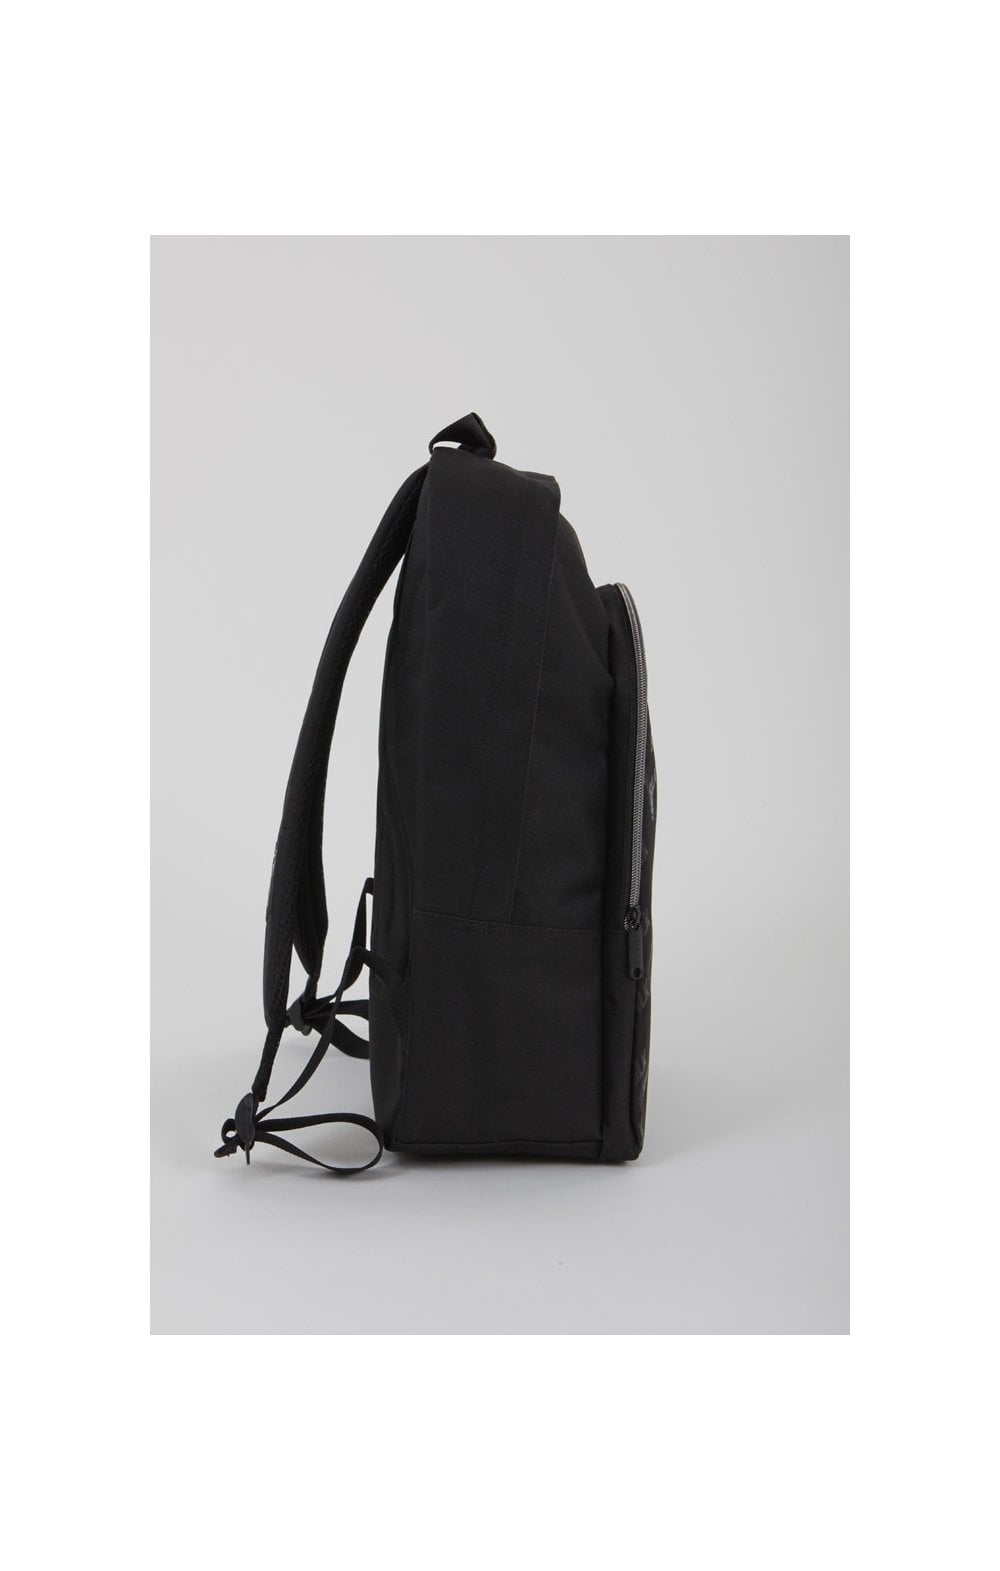 SikSilk Diagonal Repeat Backpack - Black (1)